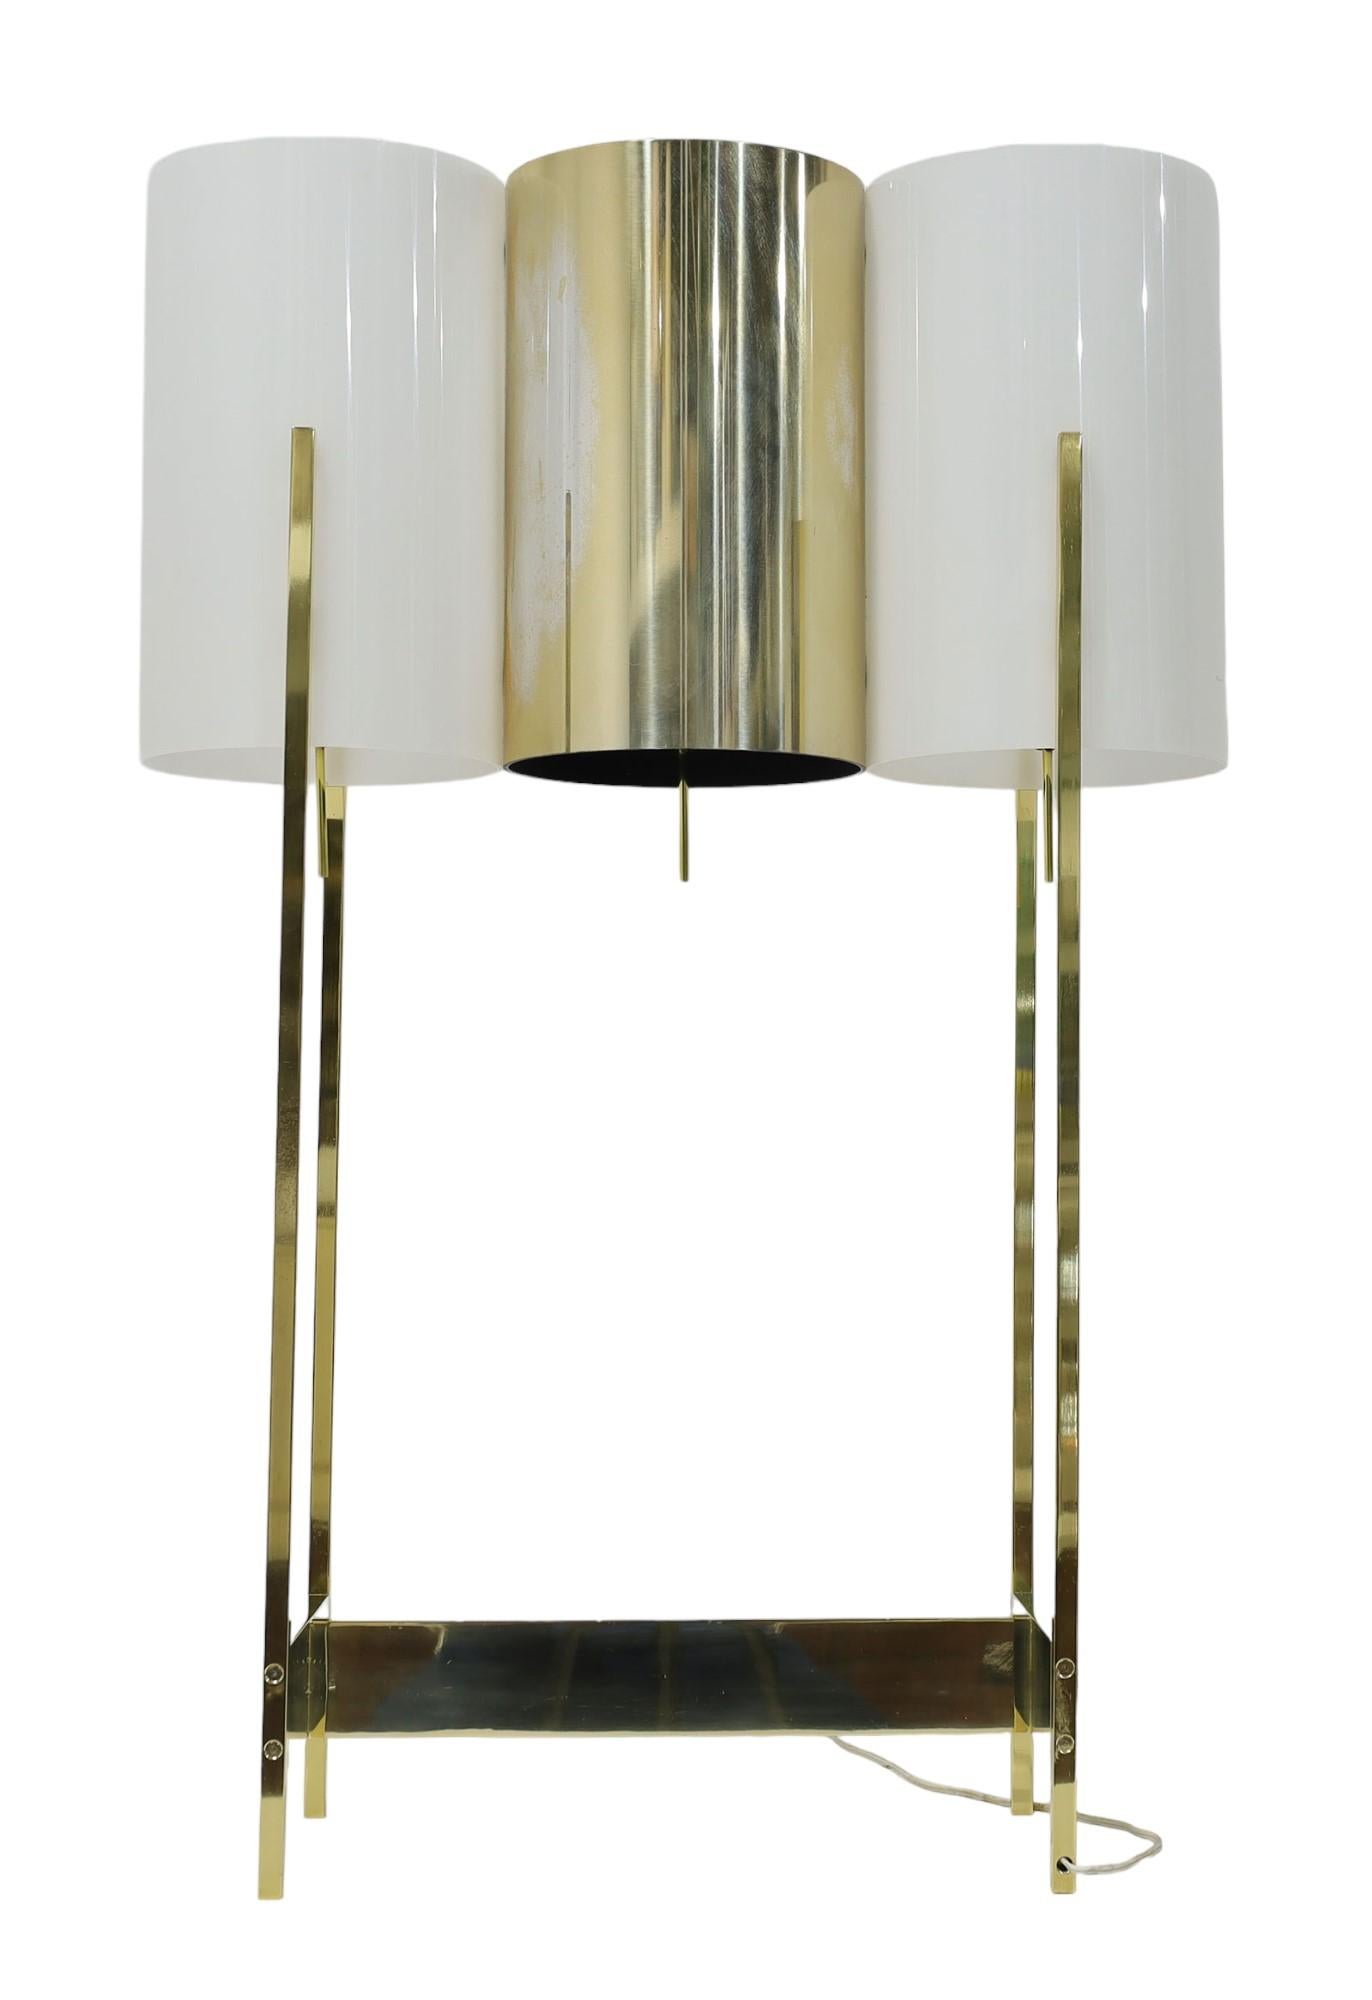 Très rare et étonnante paire de lampes de table en laiton et lucite de Paul Mayen. Chaque lampe est composée de trois cylindres, deux en lucite et un en laiton. Interrupteurs marche/arrêt indépendants pour chaque cylindre. Ils sont très grands